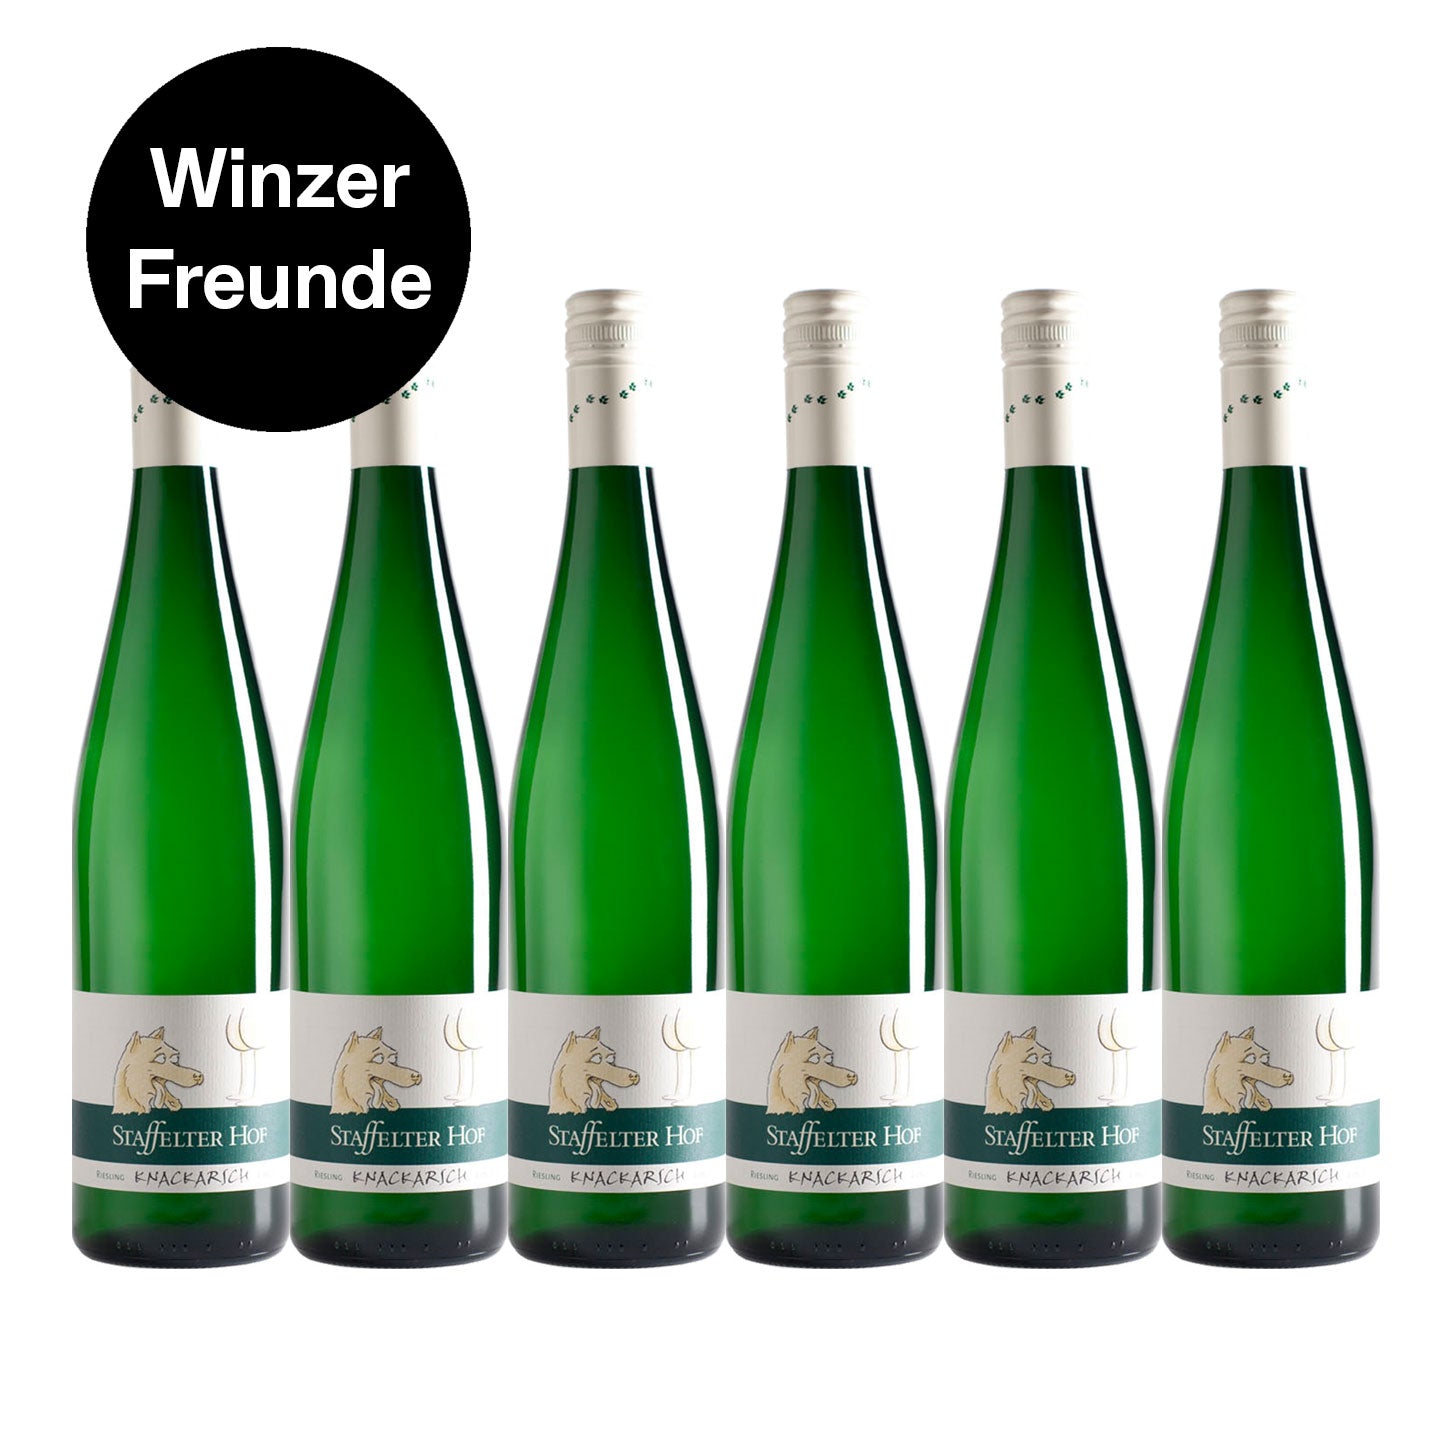 Riesling - "Knackarsch" - Weingut Staffelter Hof - 8,5% alc